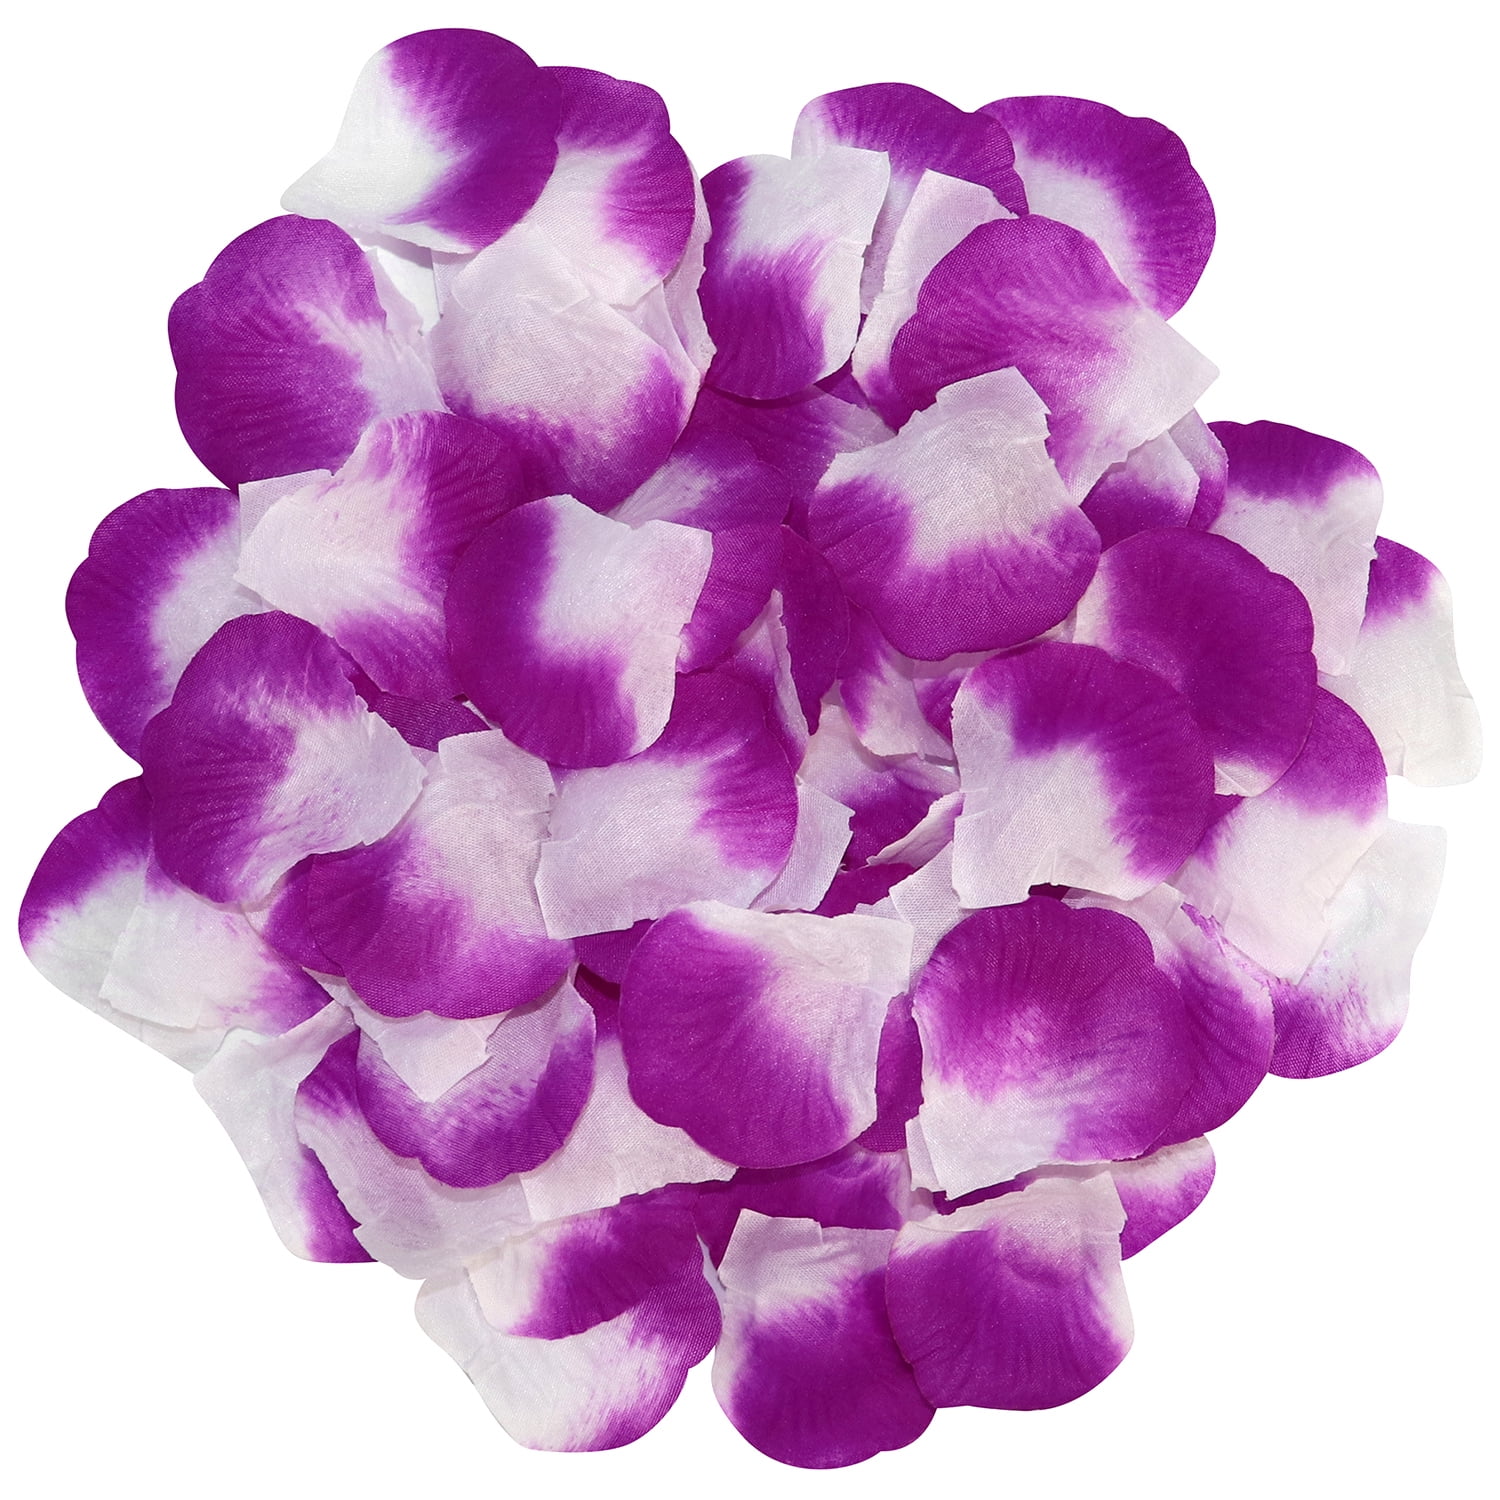 clberni 3000 Pcs Rose Petals Artificial Flower Petals Silk Rose Petals Decorations for Valentines,Wedding,Romantic Night,Party, Size: 6.85 x 3.35 x 1.93